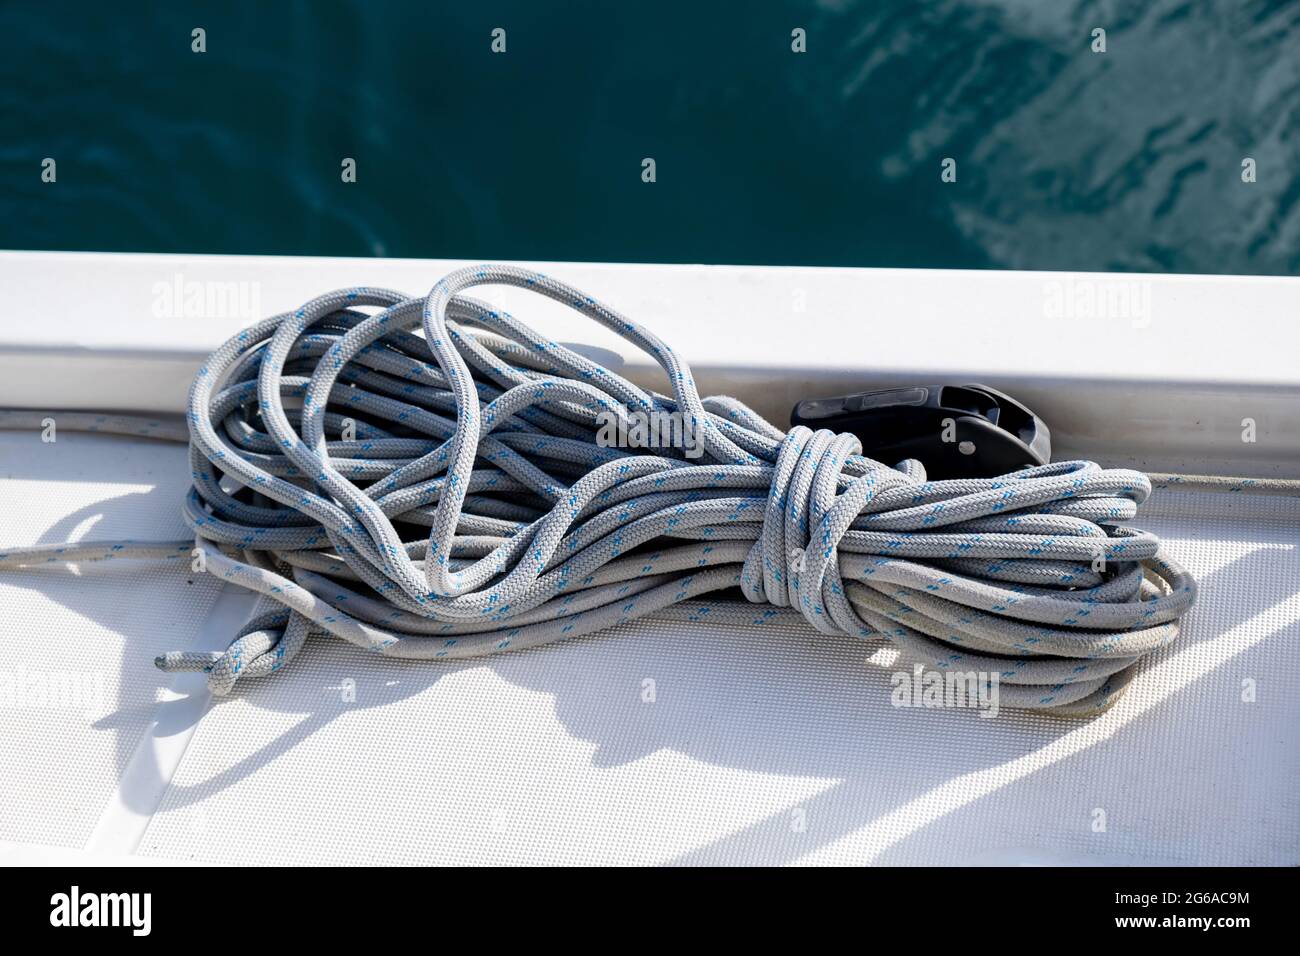 Cordes d'amarrage sur le fond du pont de bateau à voile. Corde de yachting de couleur grise sur l'arc du navire, vue rapprochée, croisière avec Voilier en mer Egée, Grèce Banque D'Images